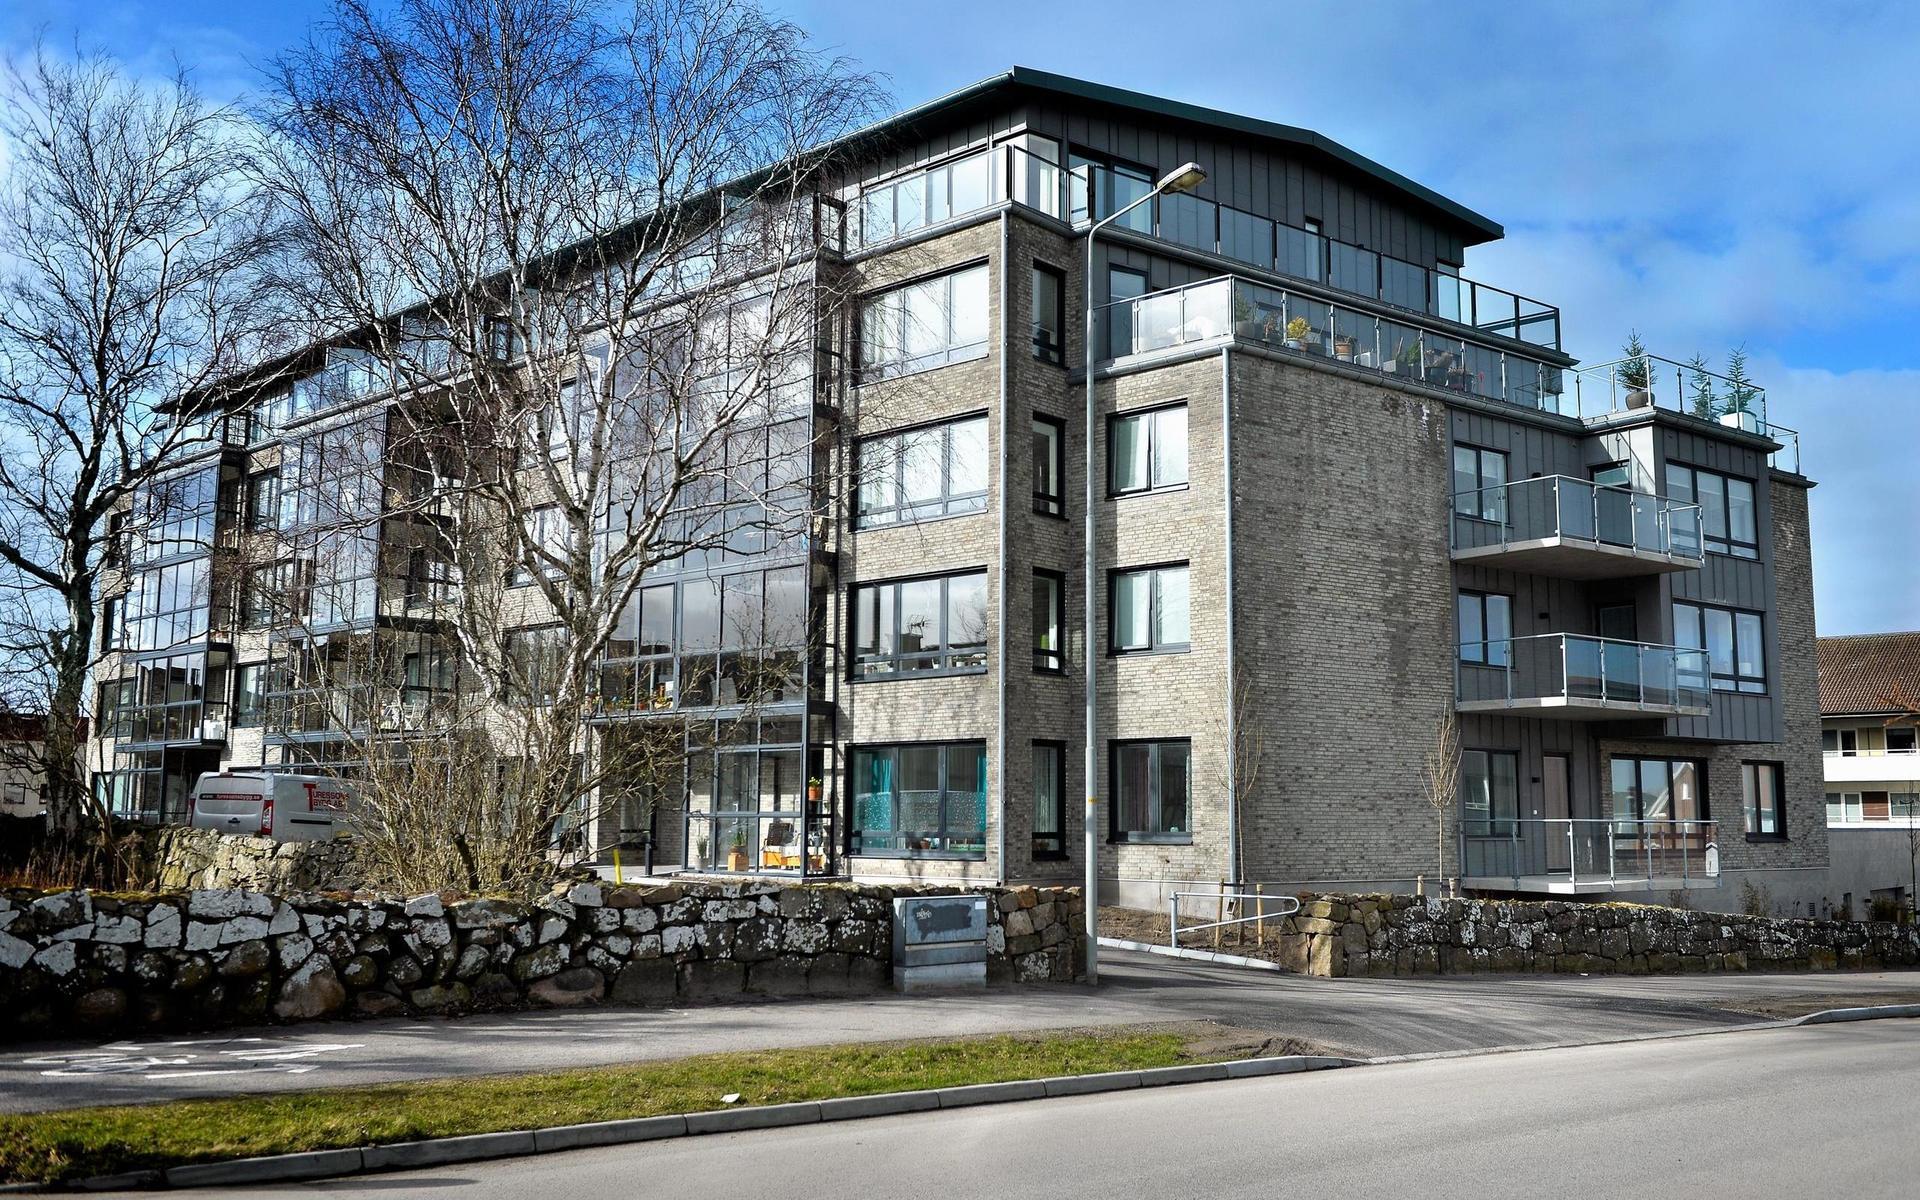 2014. När Södra vägen 38 och 40 byggdes var huset det första nybygget i kvarteret sedan 1971. Huset består av 40 lägenheter. 18 är hyresrätter och 22 är bostadsrätter. Bygget kom till genom ett samarbete mellan Cecilia Angergård och Martin Karlsson, Turessons Bygg och Lindebergs Fastigheter.